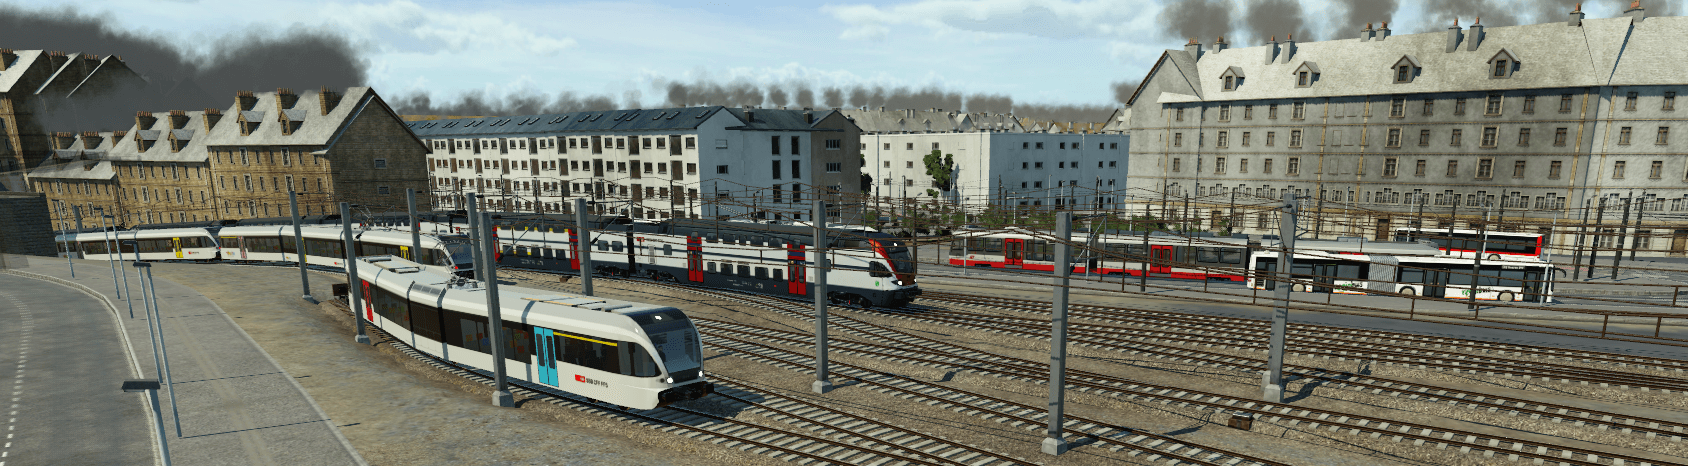 Stadt St. Gallen Bahnhofsausfahrt und öffentlicher Nahverkehr von Gotthard